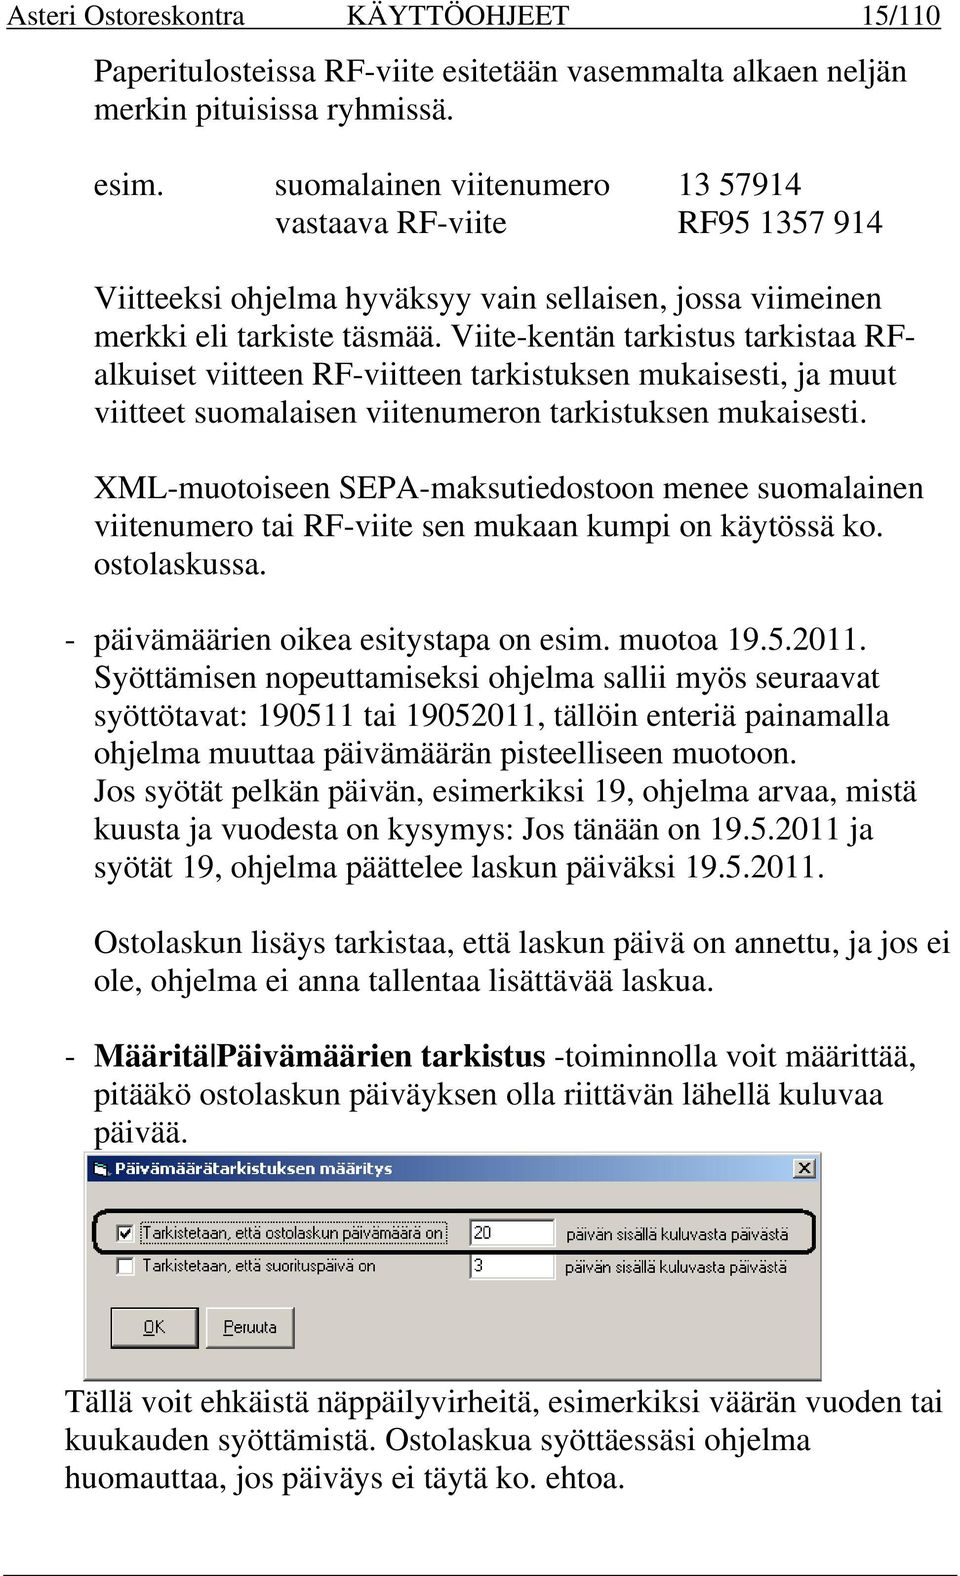 Viite-kentän tarkistus tarkistaa RFalkuiset viitteen RF-viitteen tarkistuksen mukaisesti, ja muut viitteet suomalaisen viitenumeron tarkistuksen mukaisesti.